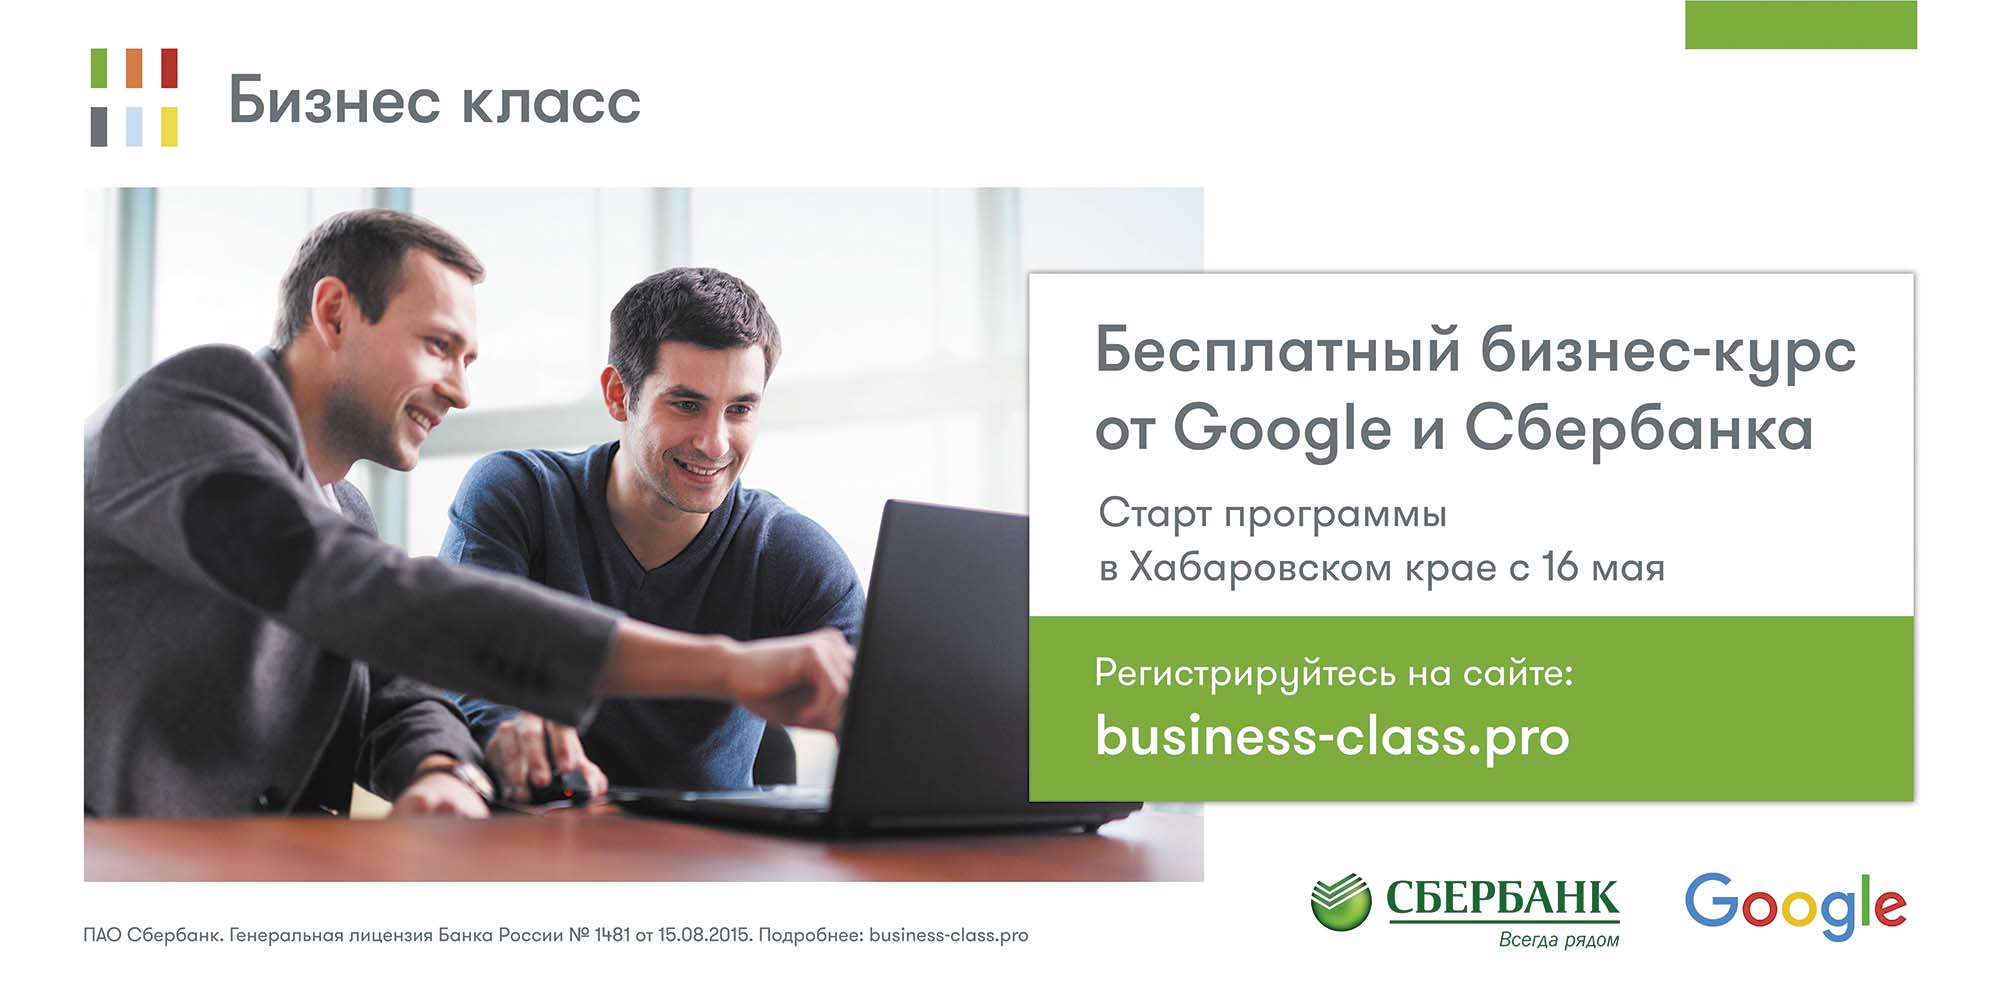 Хабаровчане могут стать участниками бесплатной программы «Бизнес класс»